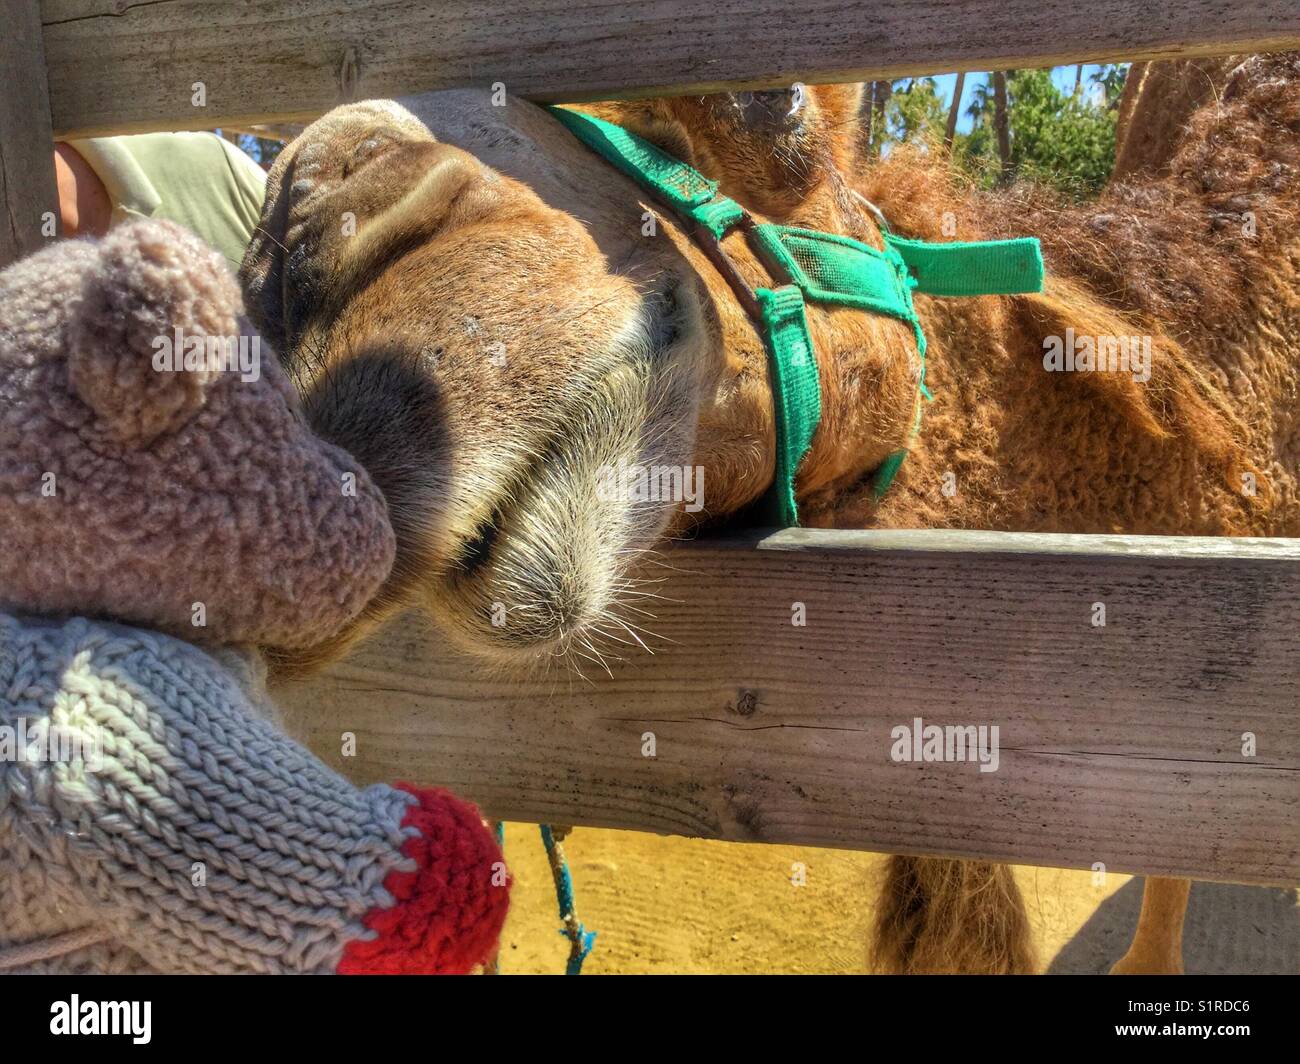 A camel gives a teddy bear a kiss. Stock Photo